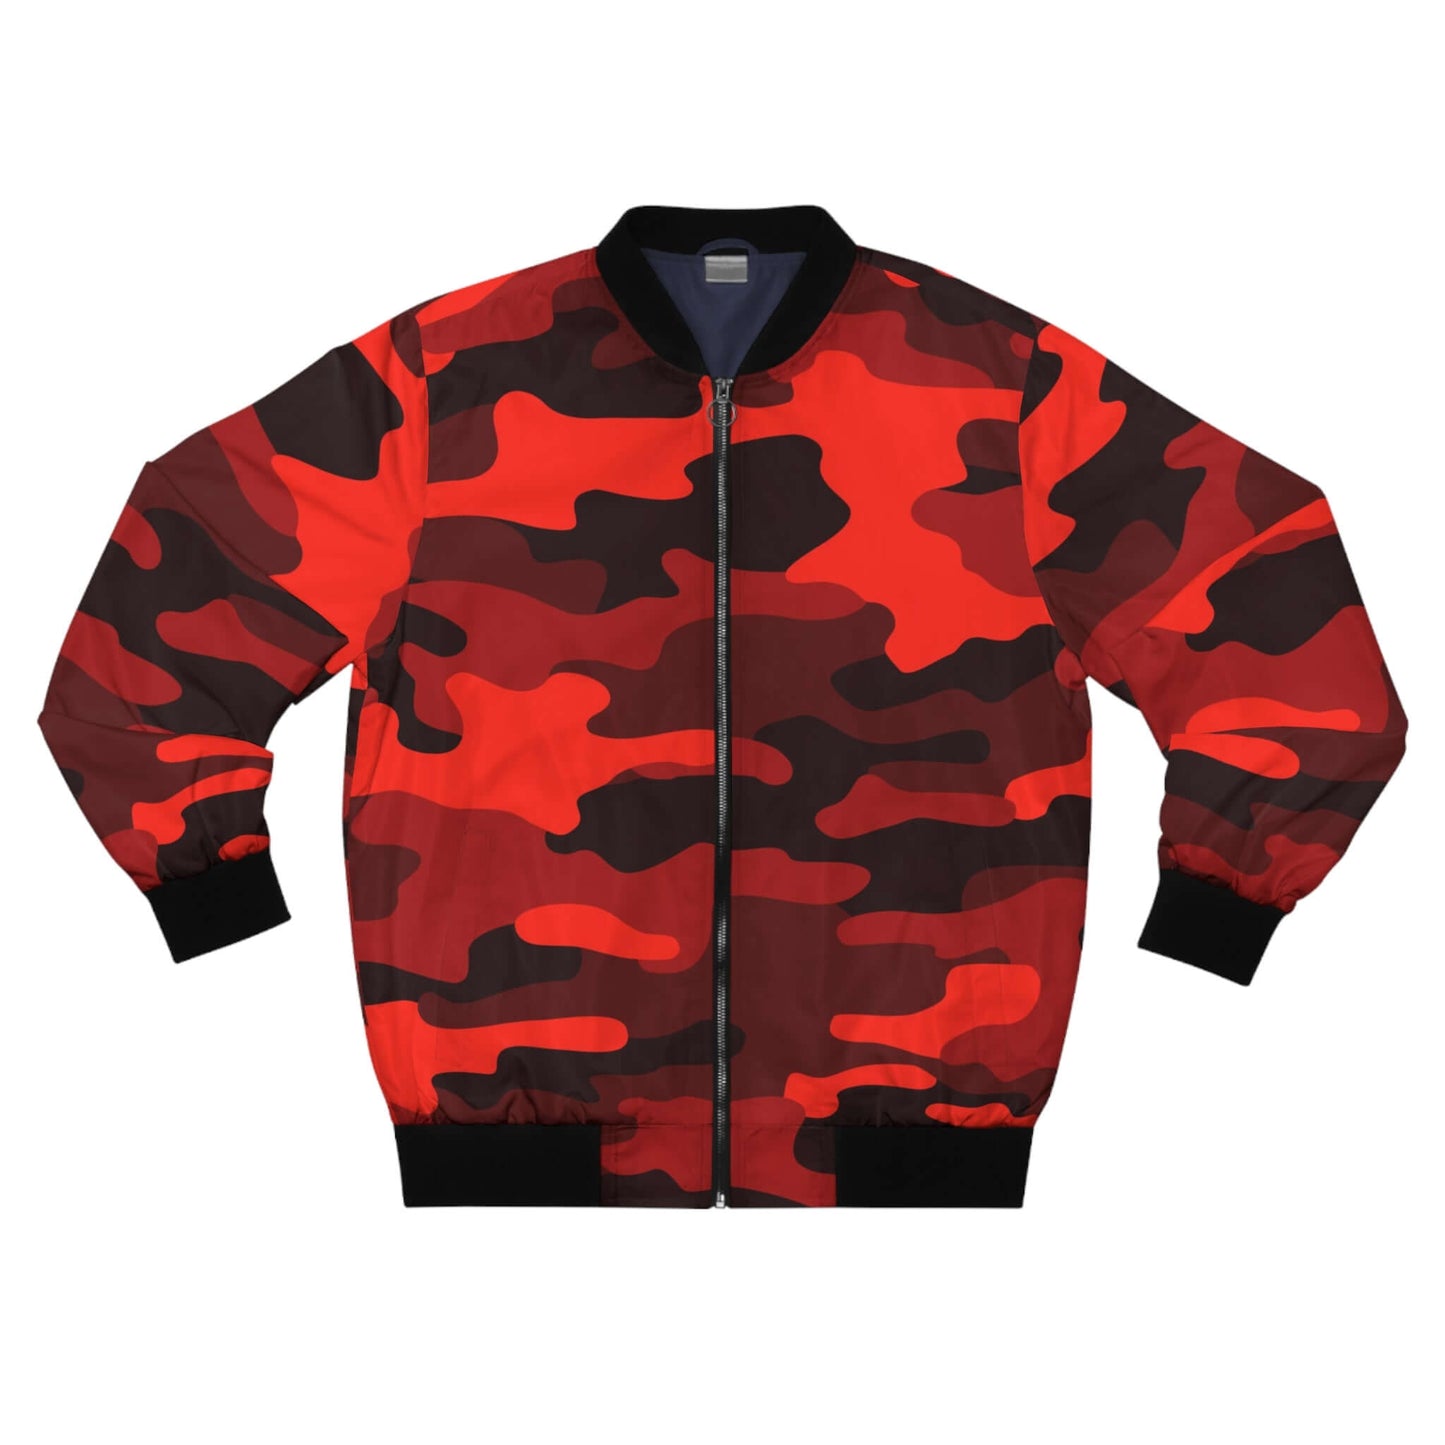 Scarlet Red & Black Camo Bomber Jacket